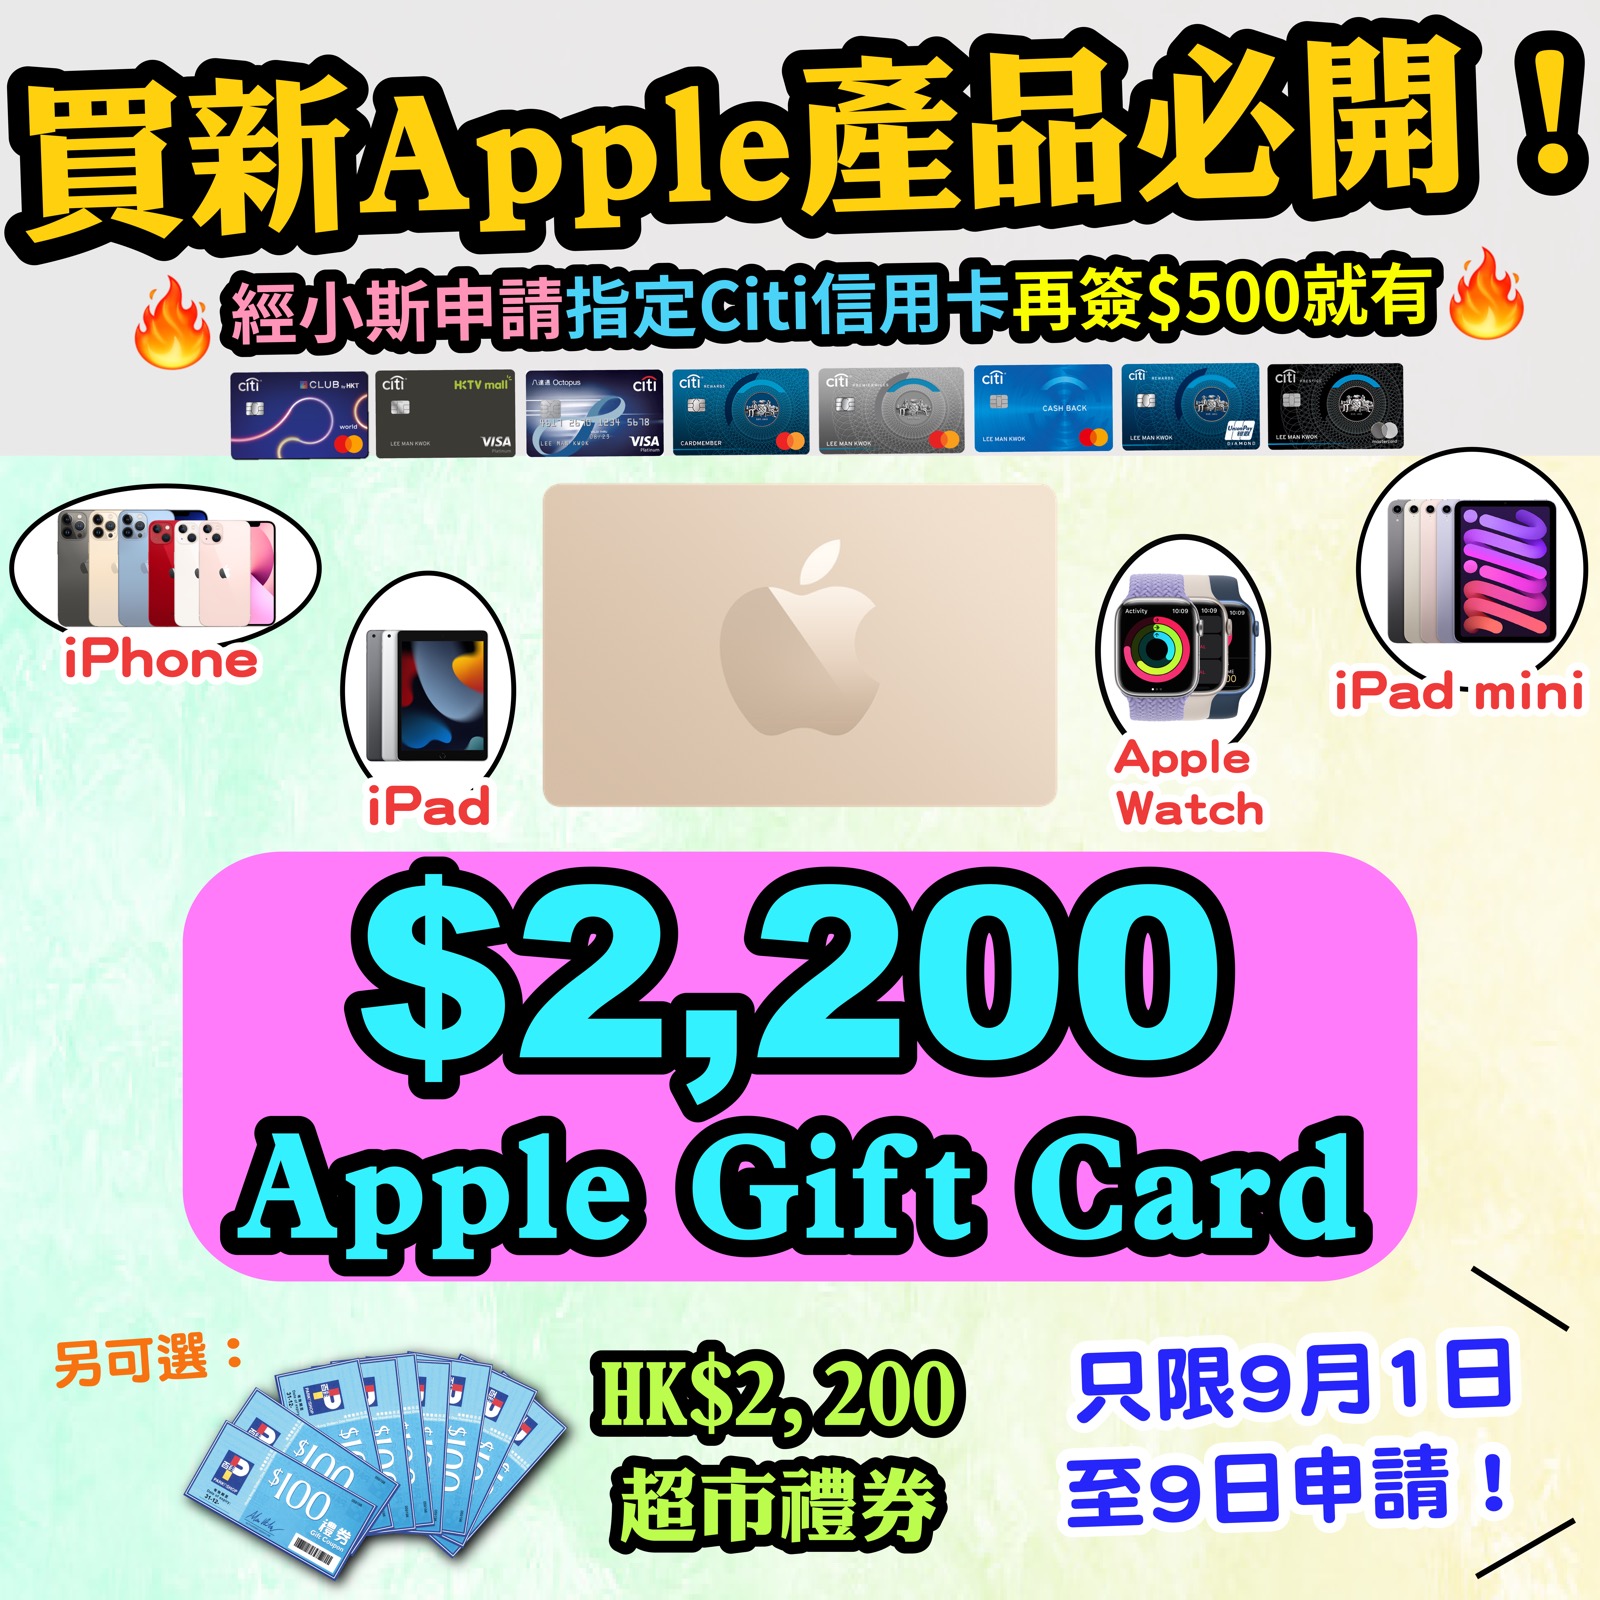 【🔥🔥🔥送$2,200 Apple Gift Card或超市禮券❗❗】小斯Citi信用卡瘋狂優惠❗❗開卡簽$500就送$2,200 Apple Gift Card 或 超市禮券 😍😍 】用黎買Apple新產品就岩了！